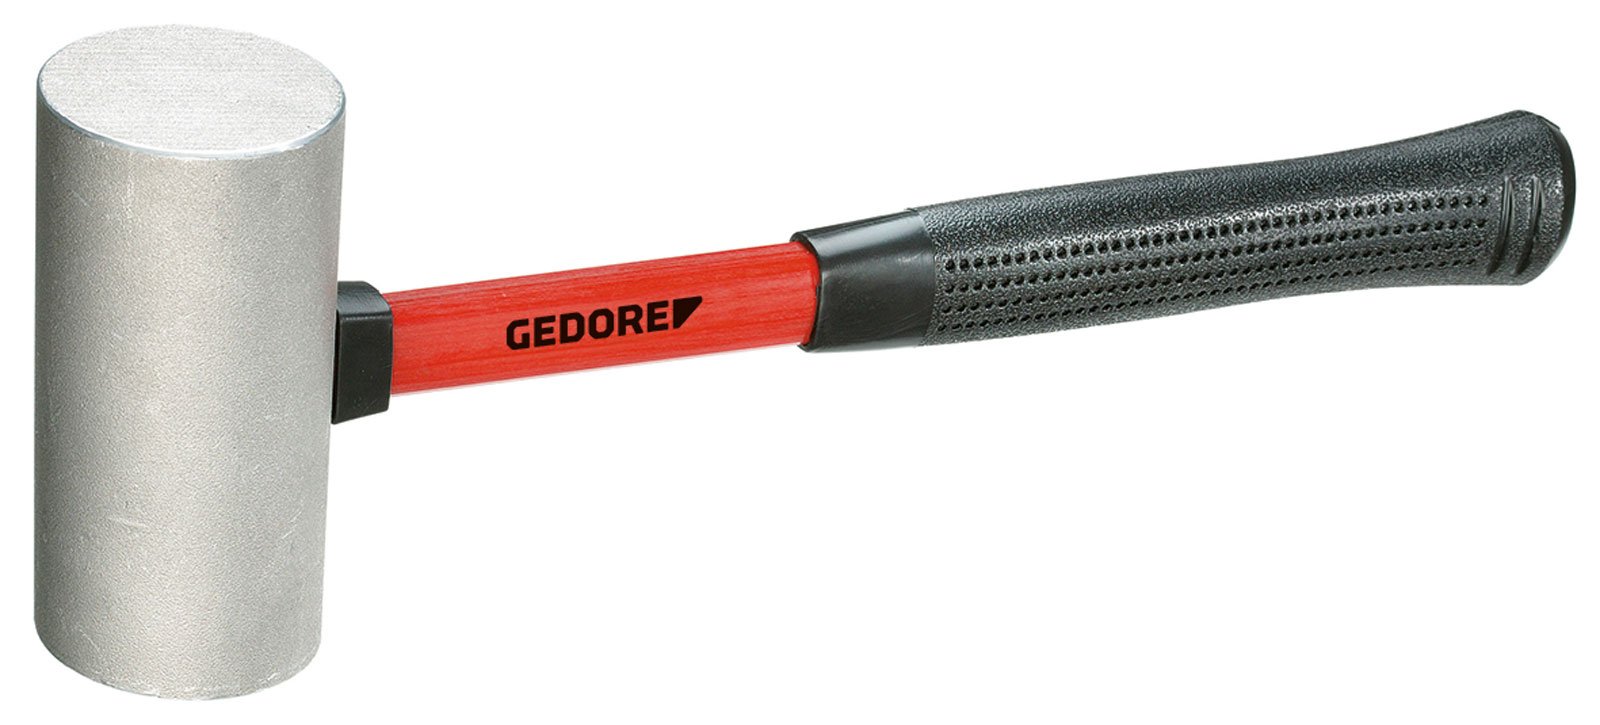 GEDORE Leichtmetallhammer 250 g, 1 Stück, 21 F-250